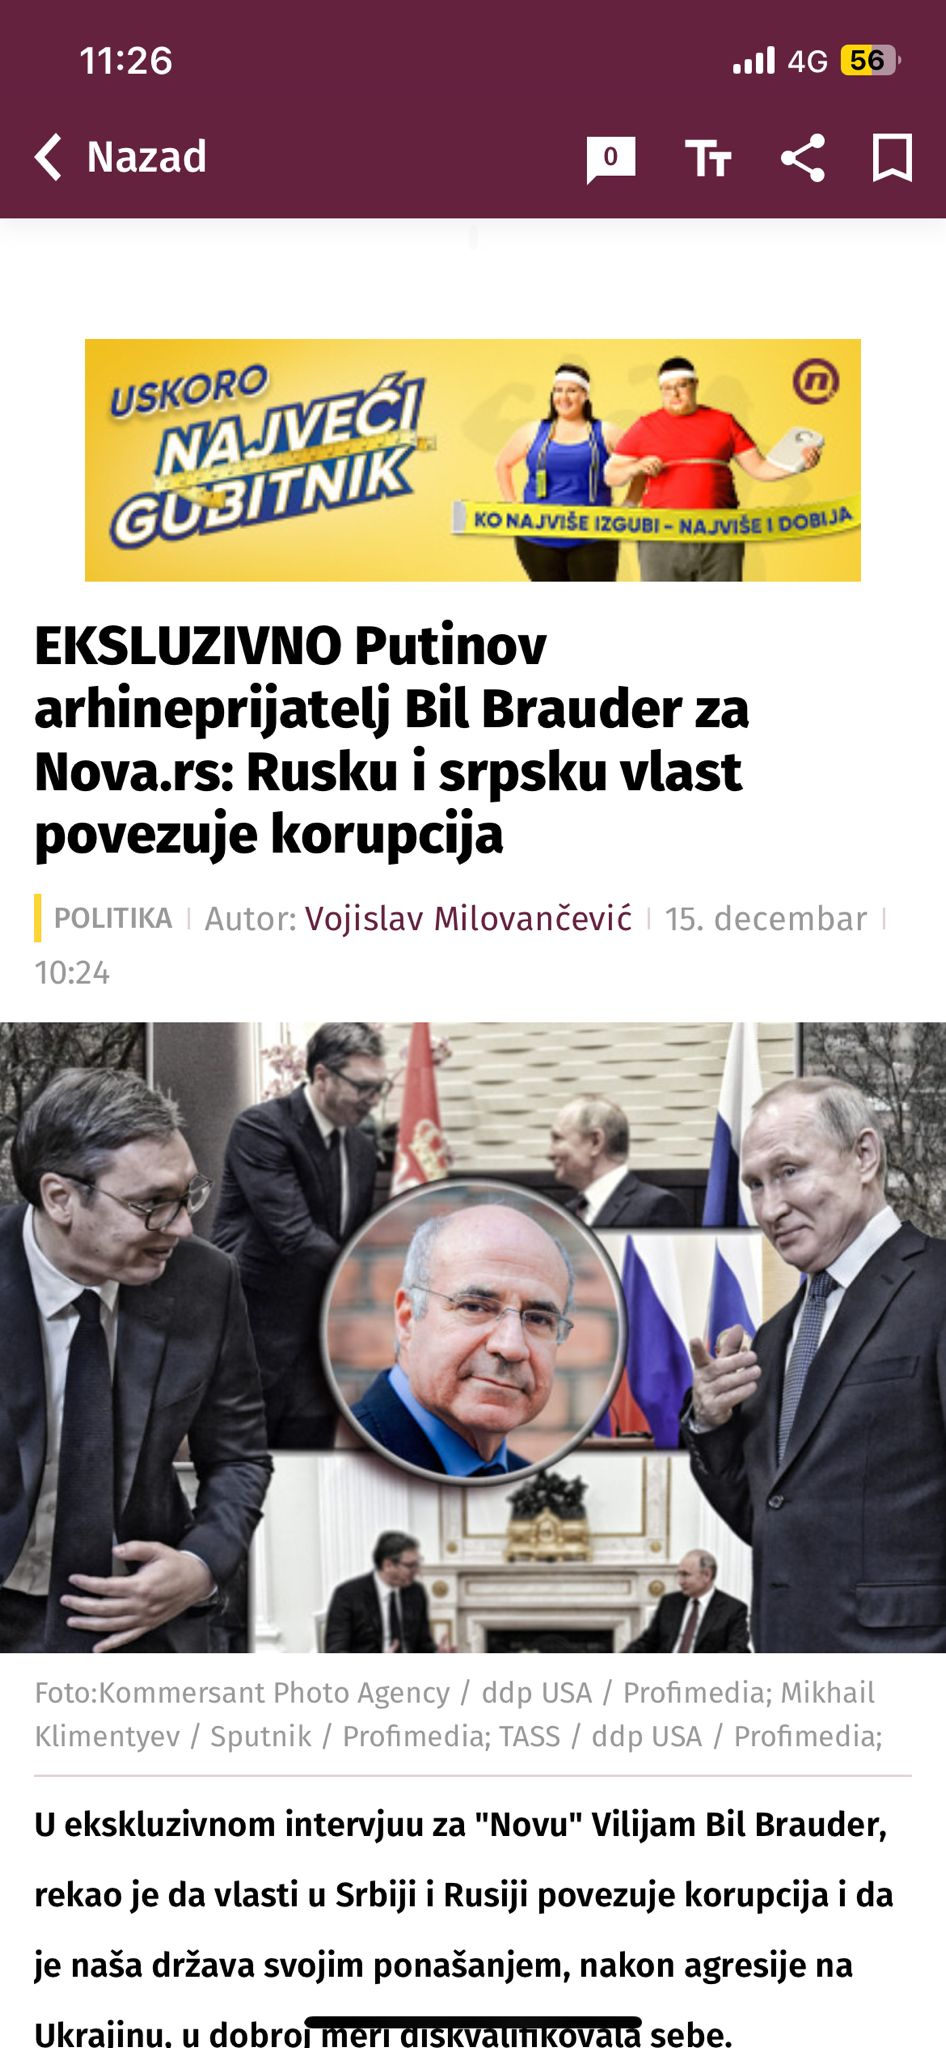 BOLESNA KAMPANJA SE NASTAVLJA! Tajkunska glasila poručuju Vučiću da je na “pogrešnoj strani” jer sluša samo mišljenja građana Srbije